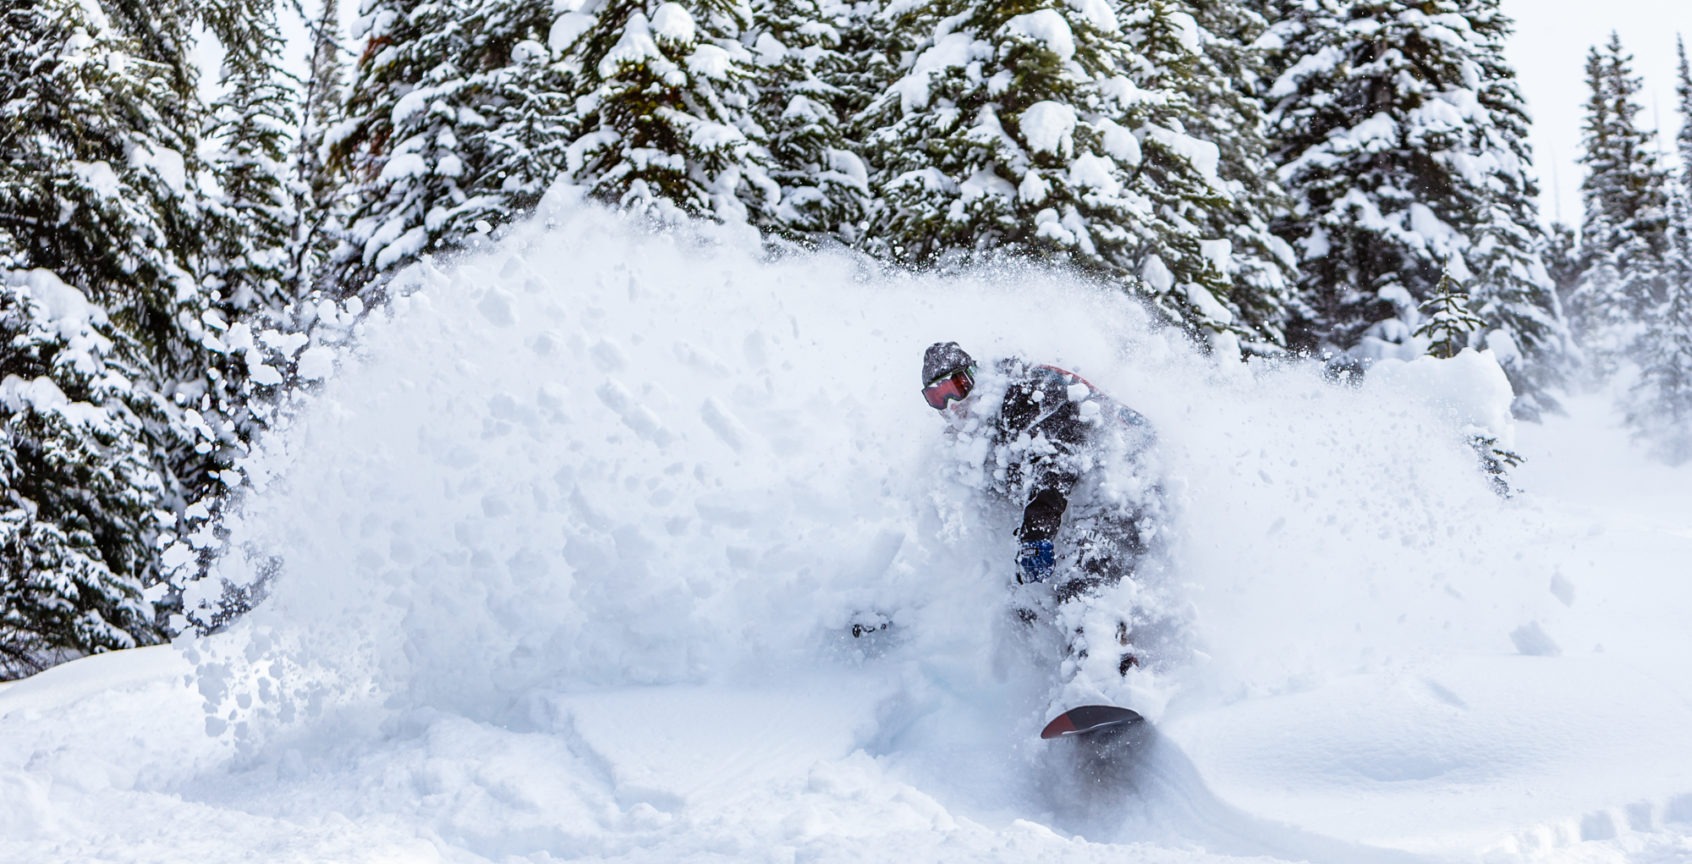 snowboarder shredding through fresh powder